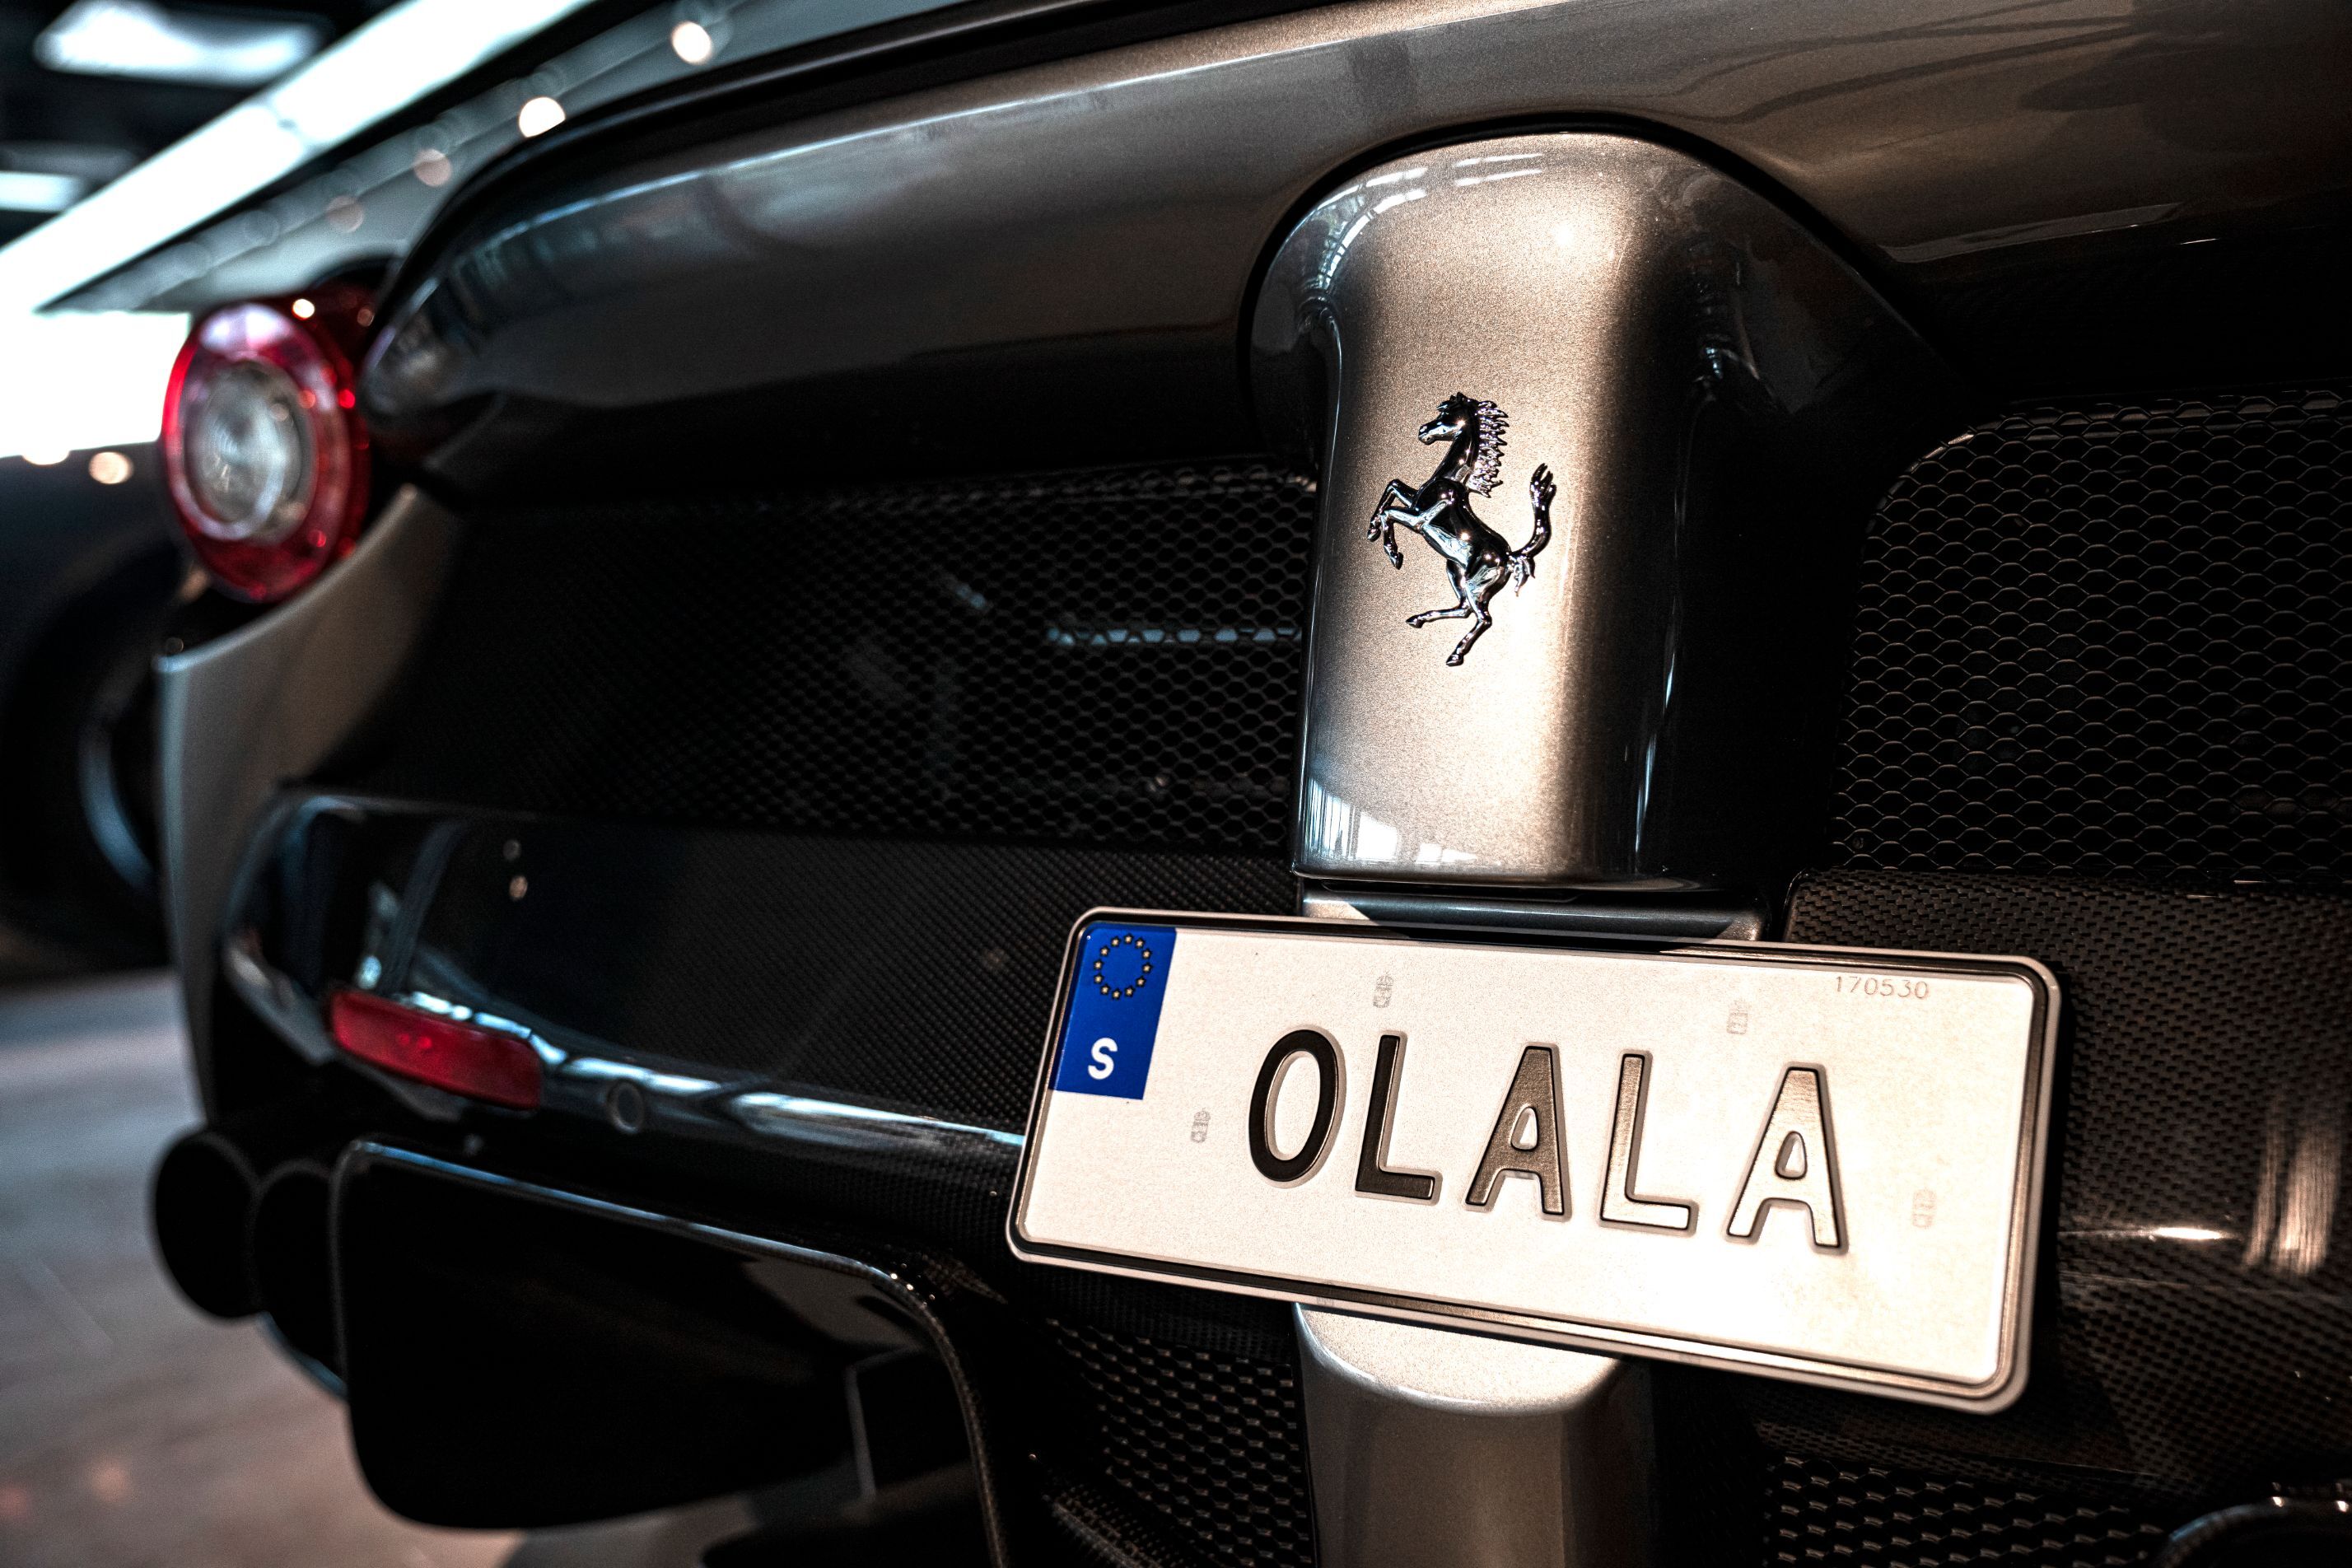 Närbild av en registreringsskylt med texten "OLALA" på en Ferra